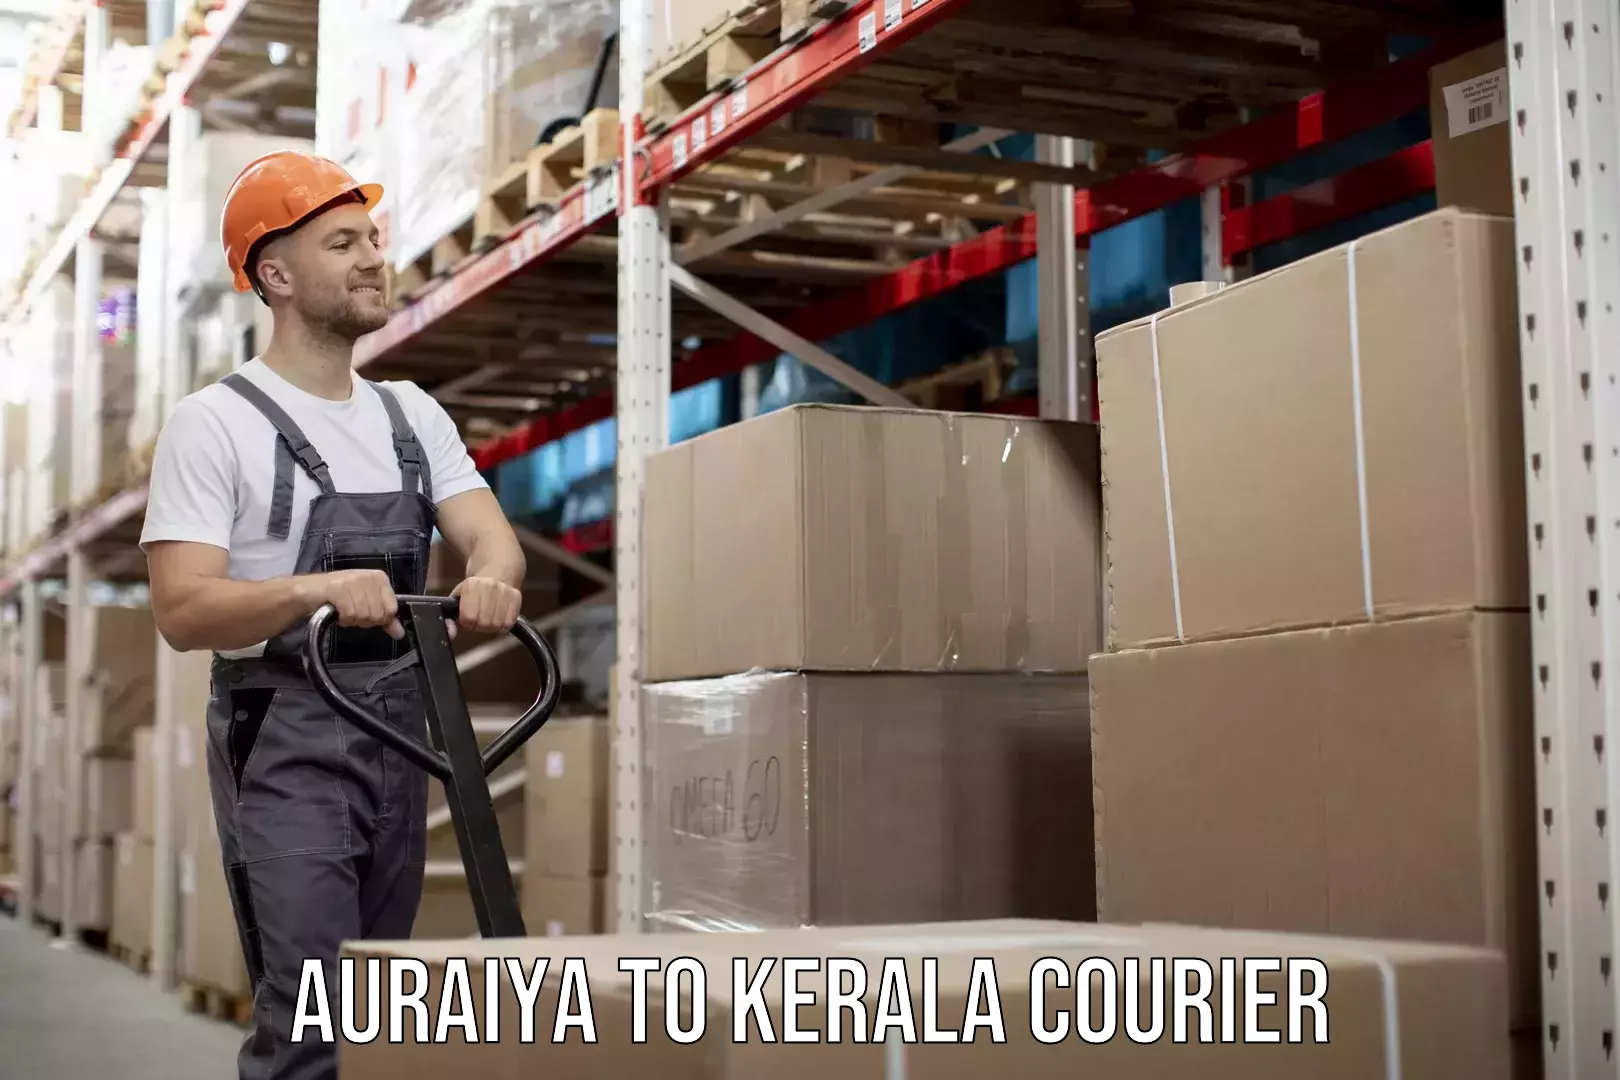 Easy return solutions in Auraiya to Kerala